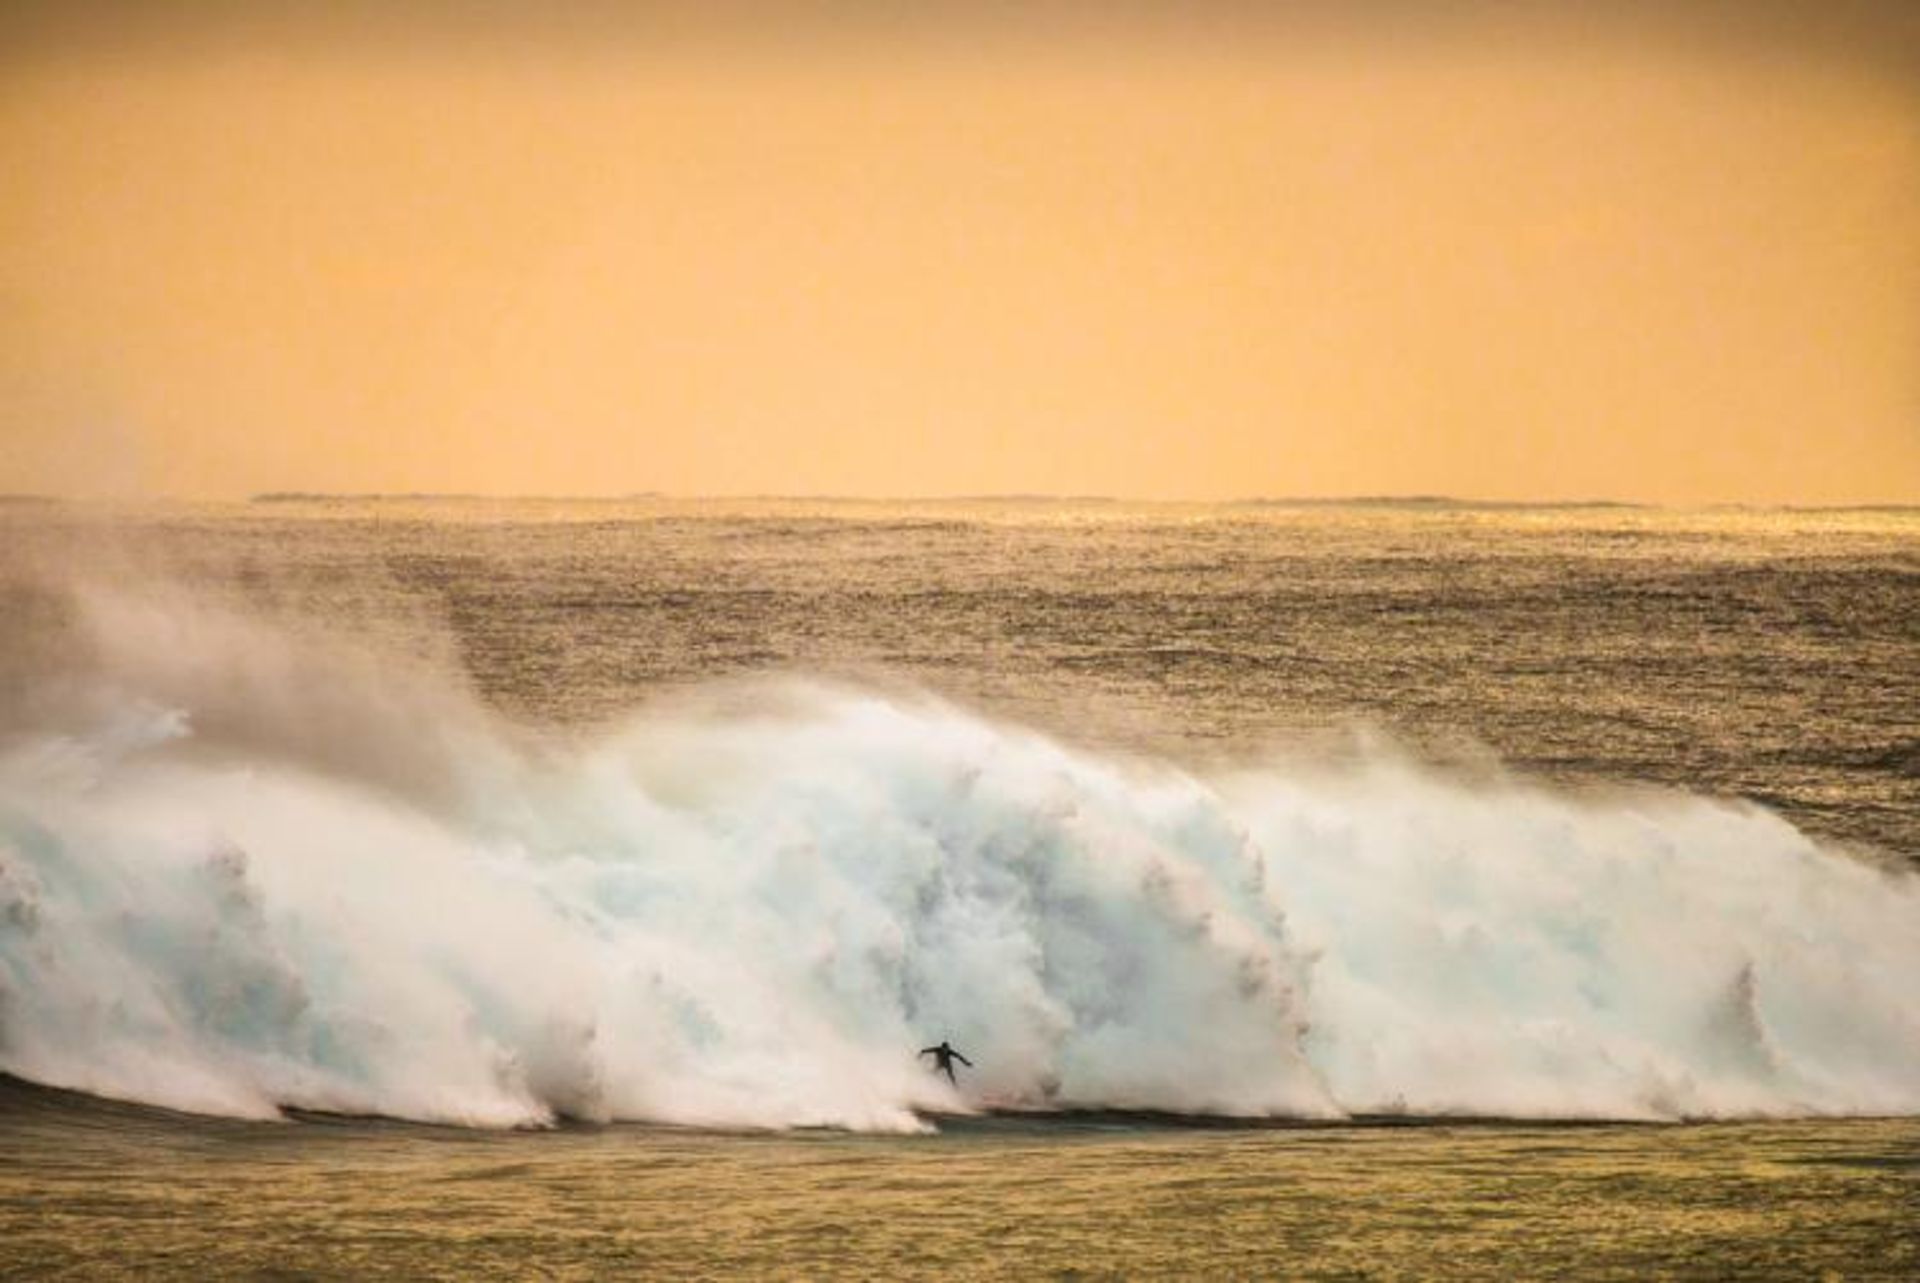 مرجع متخصصين ايران عكس فيناليست پيتر جوويك در مسابقه عكاسي 2020 Surf Photo Nikon Australia